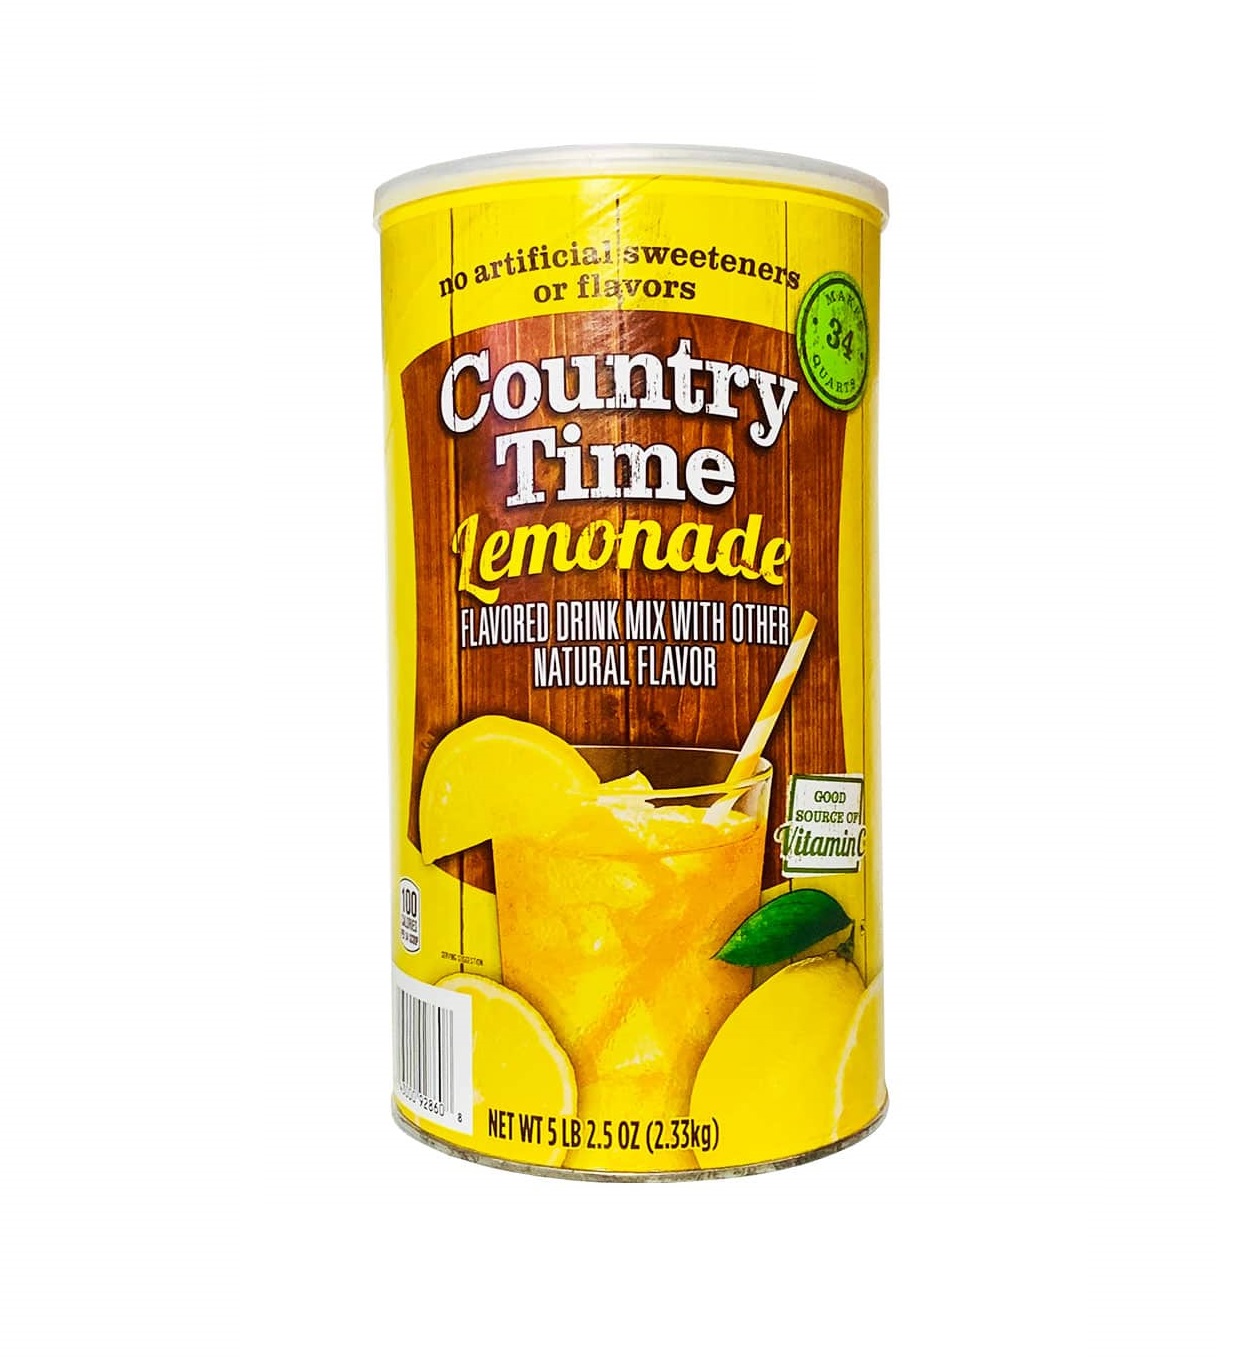 HSD 05 2025 Bột Pha Nước Chanh Country Time Lemonade Drink Mix hộp 2.33kg